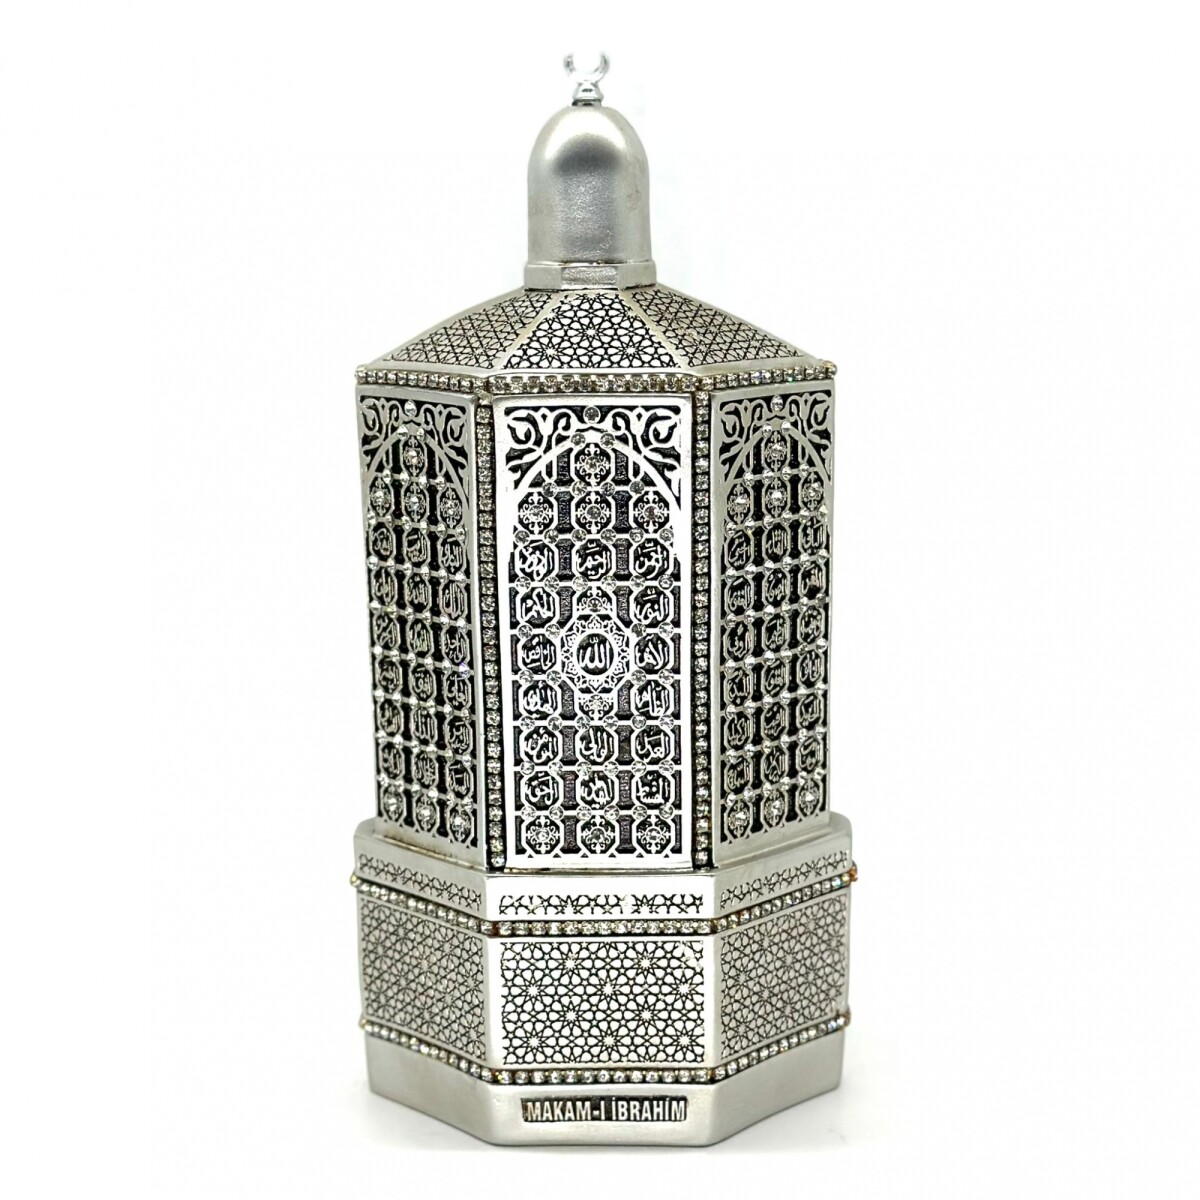 Replica mezquita sultan - Plateada 